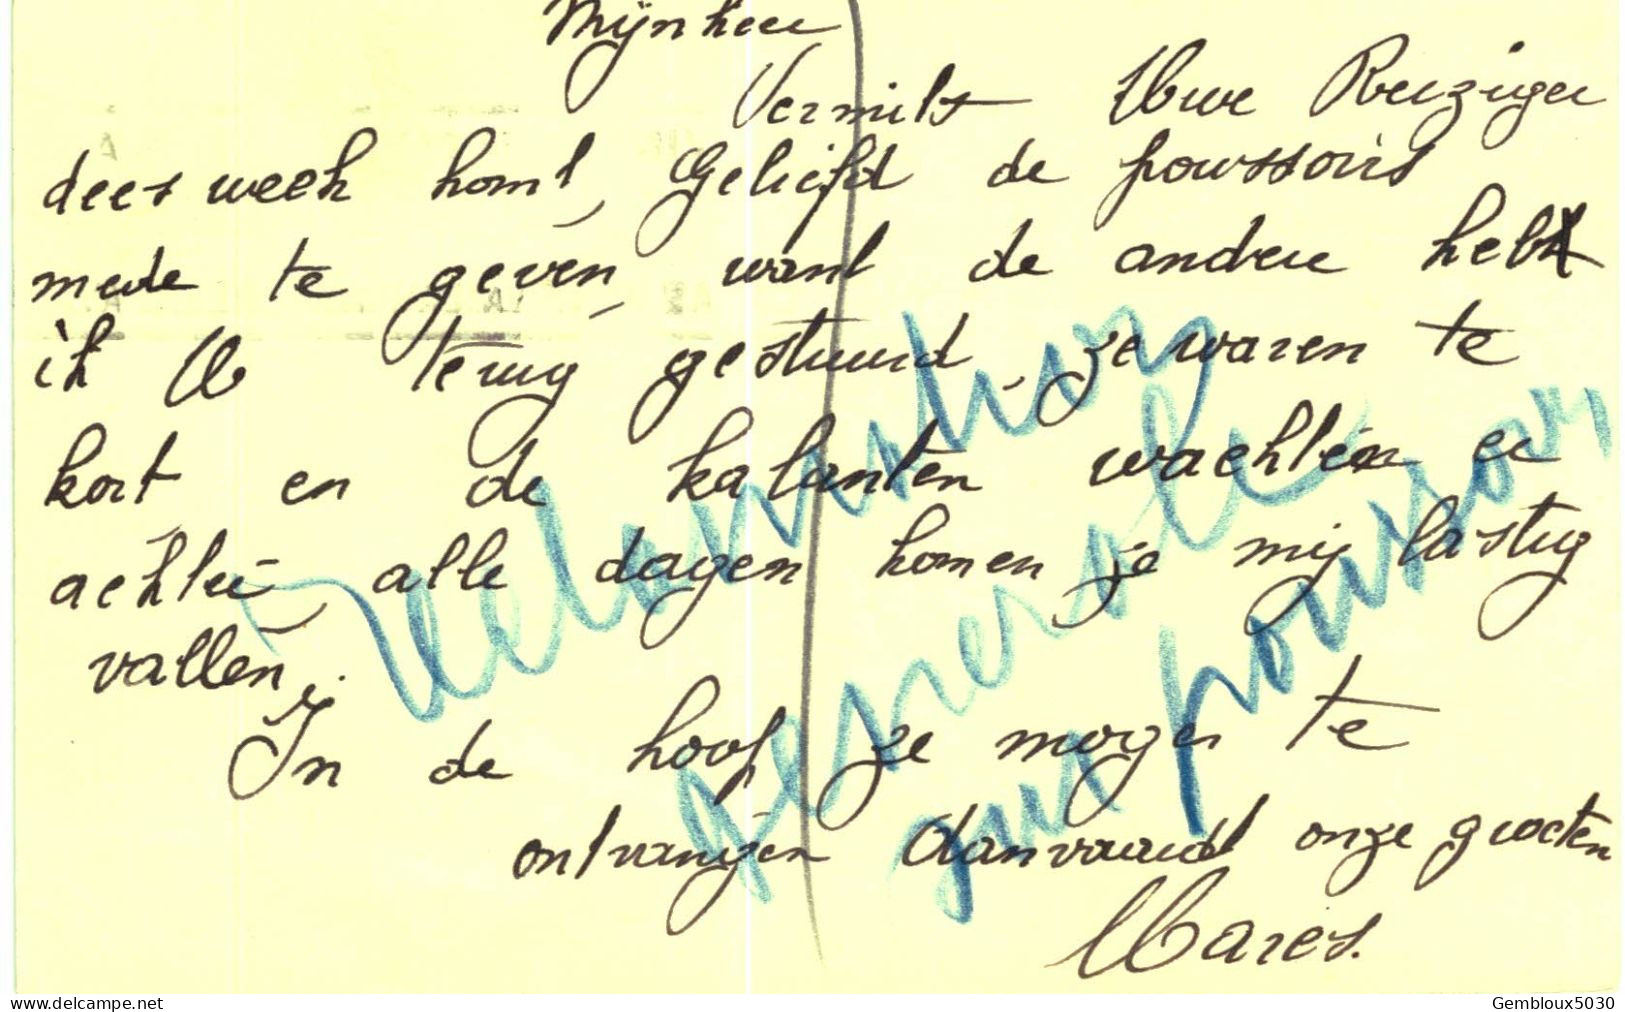 (L01) Entier Postal écrite D'Oostende Vers Deynze - Tarjetas 1934-1951